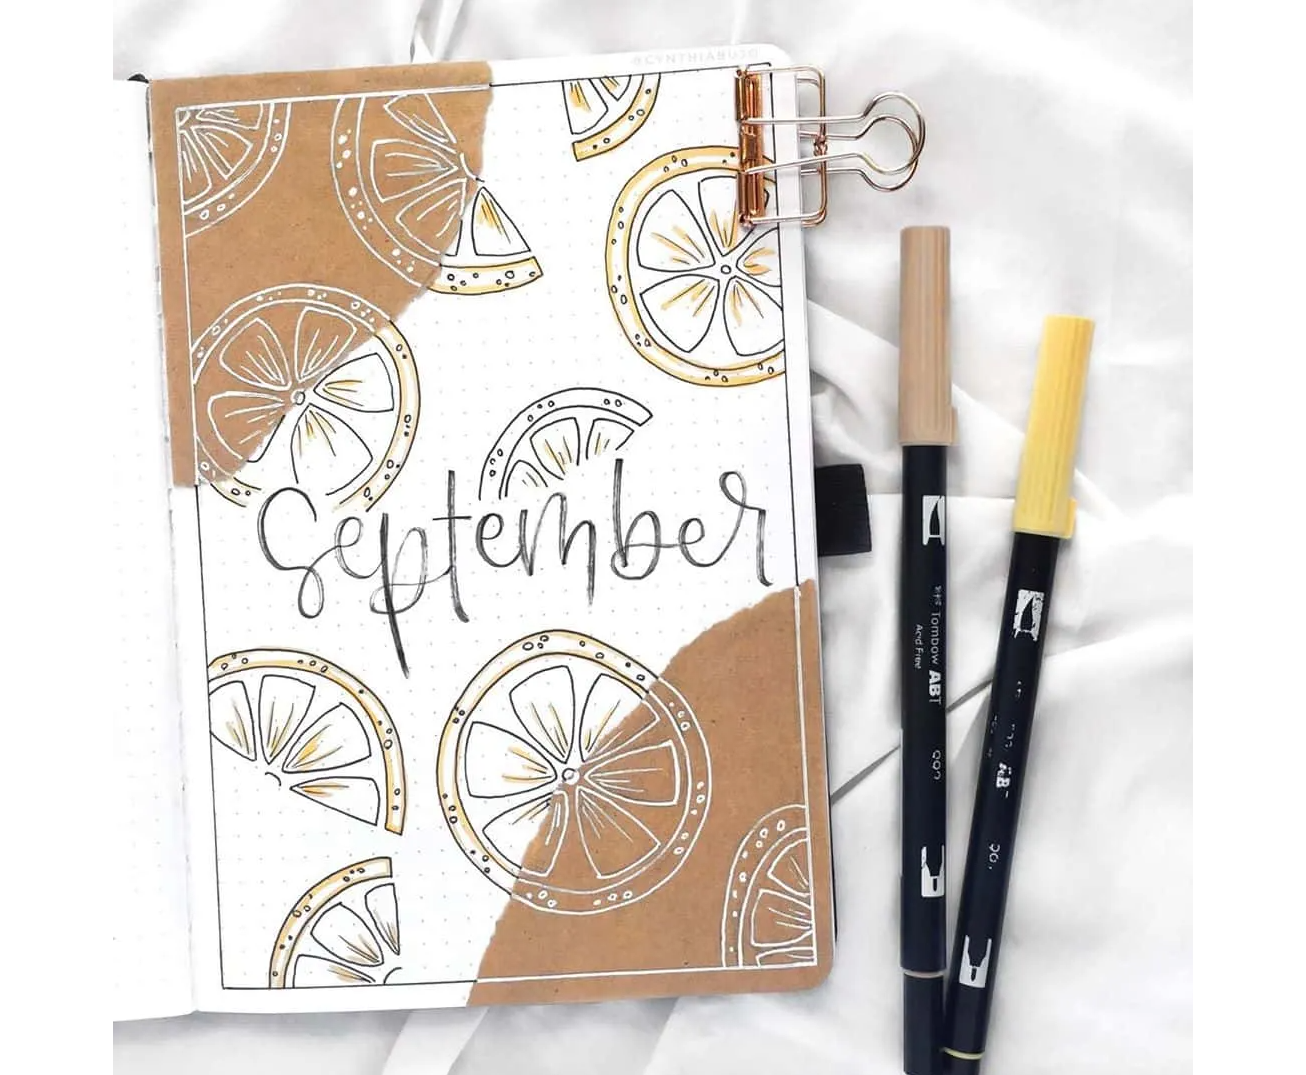 September cover page using kraft paper - lemon themed